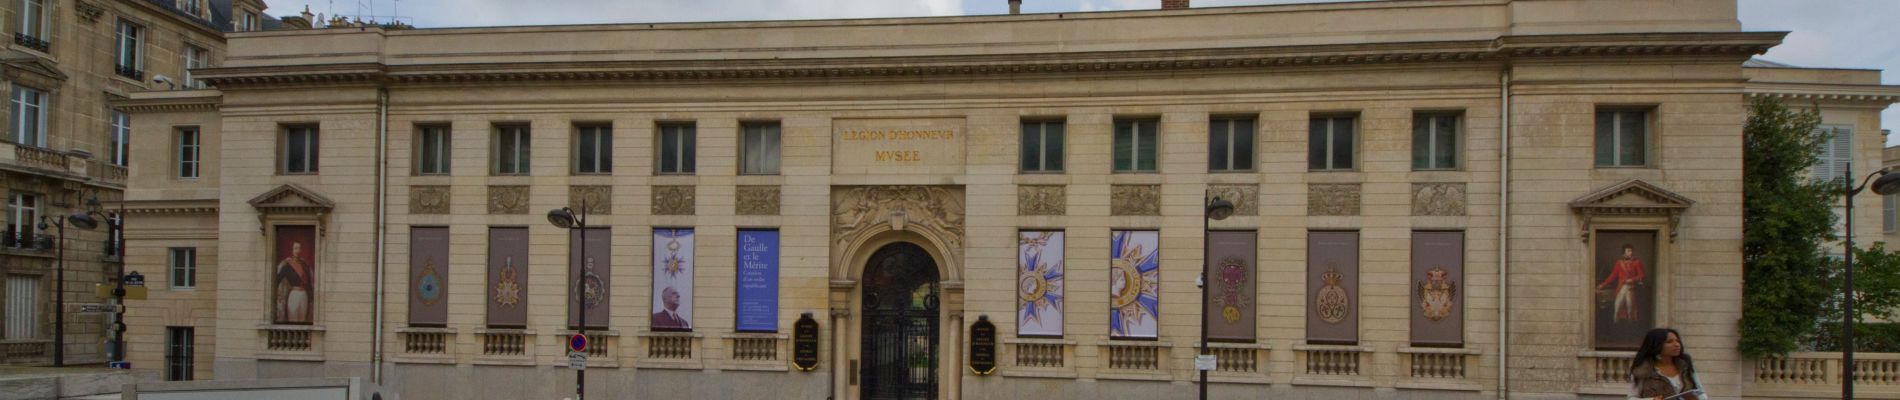 Punto di interesse Parigi - Musée national de la Légion d’honneur et des ordres de chevalerie - Photo